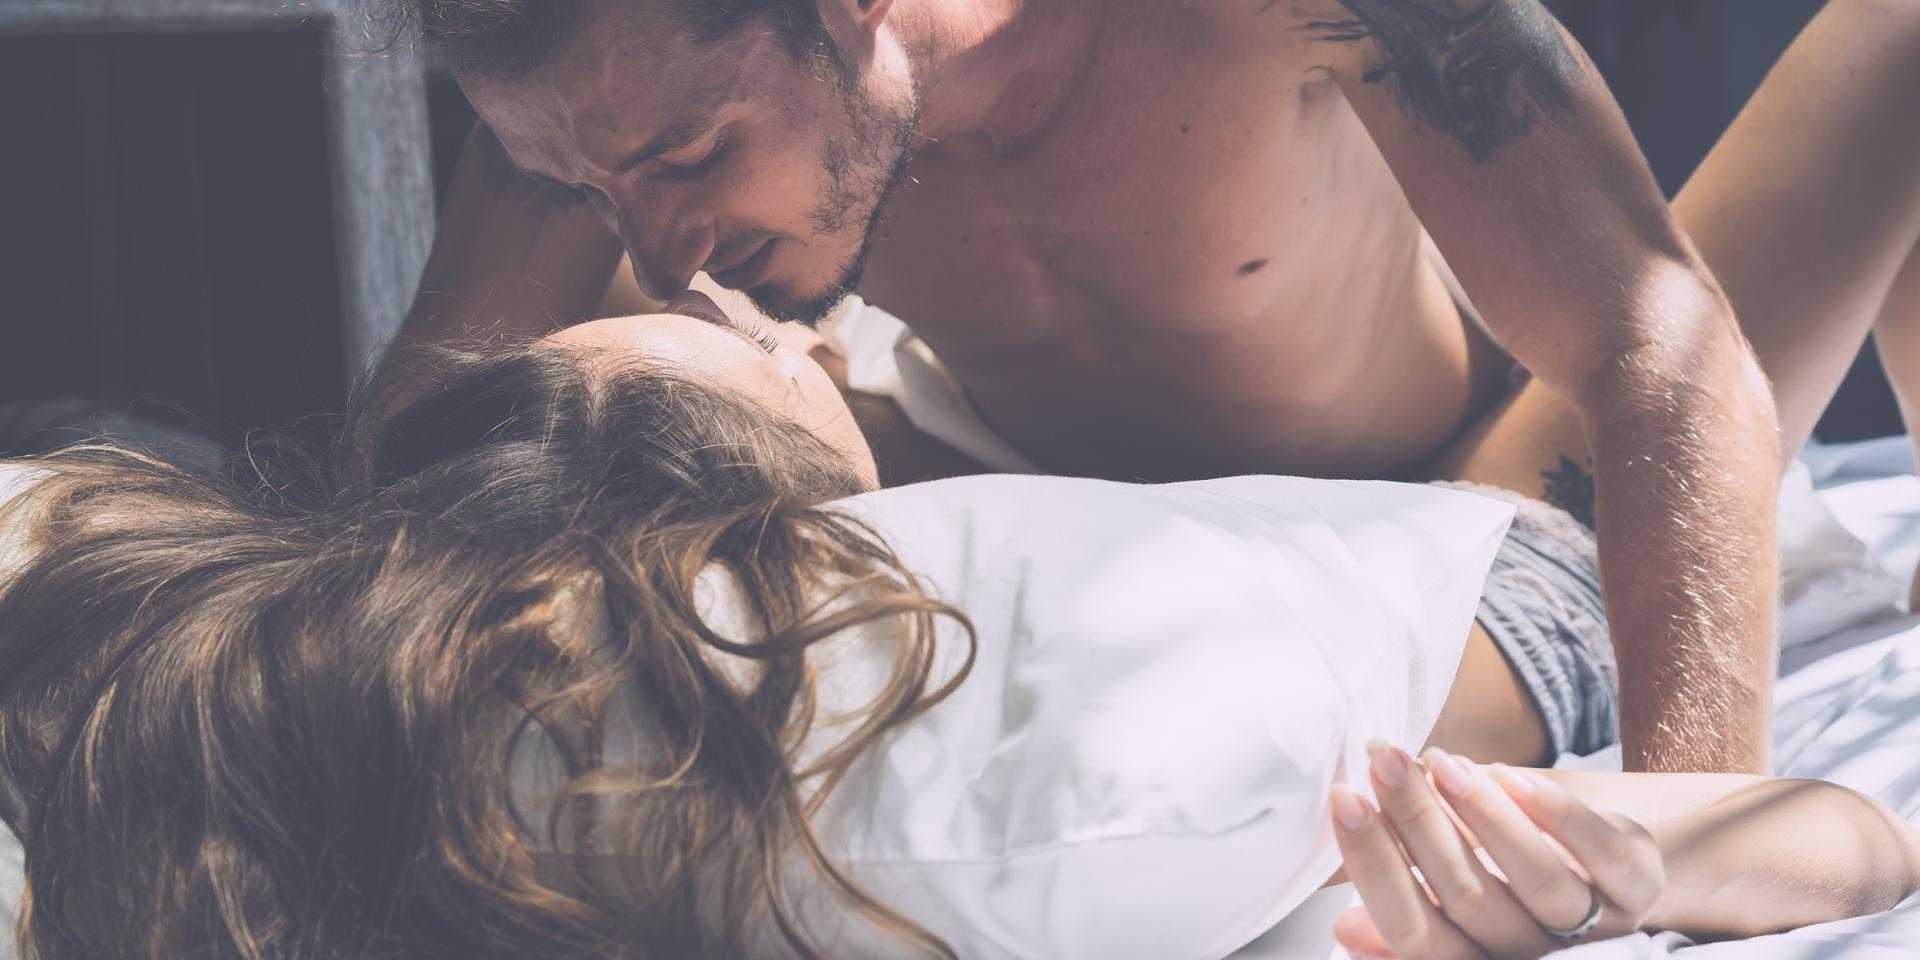 Влюблённая русская парочка в постели получает наслаждение от бурного секса